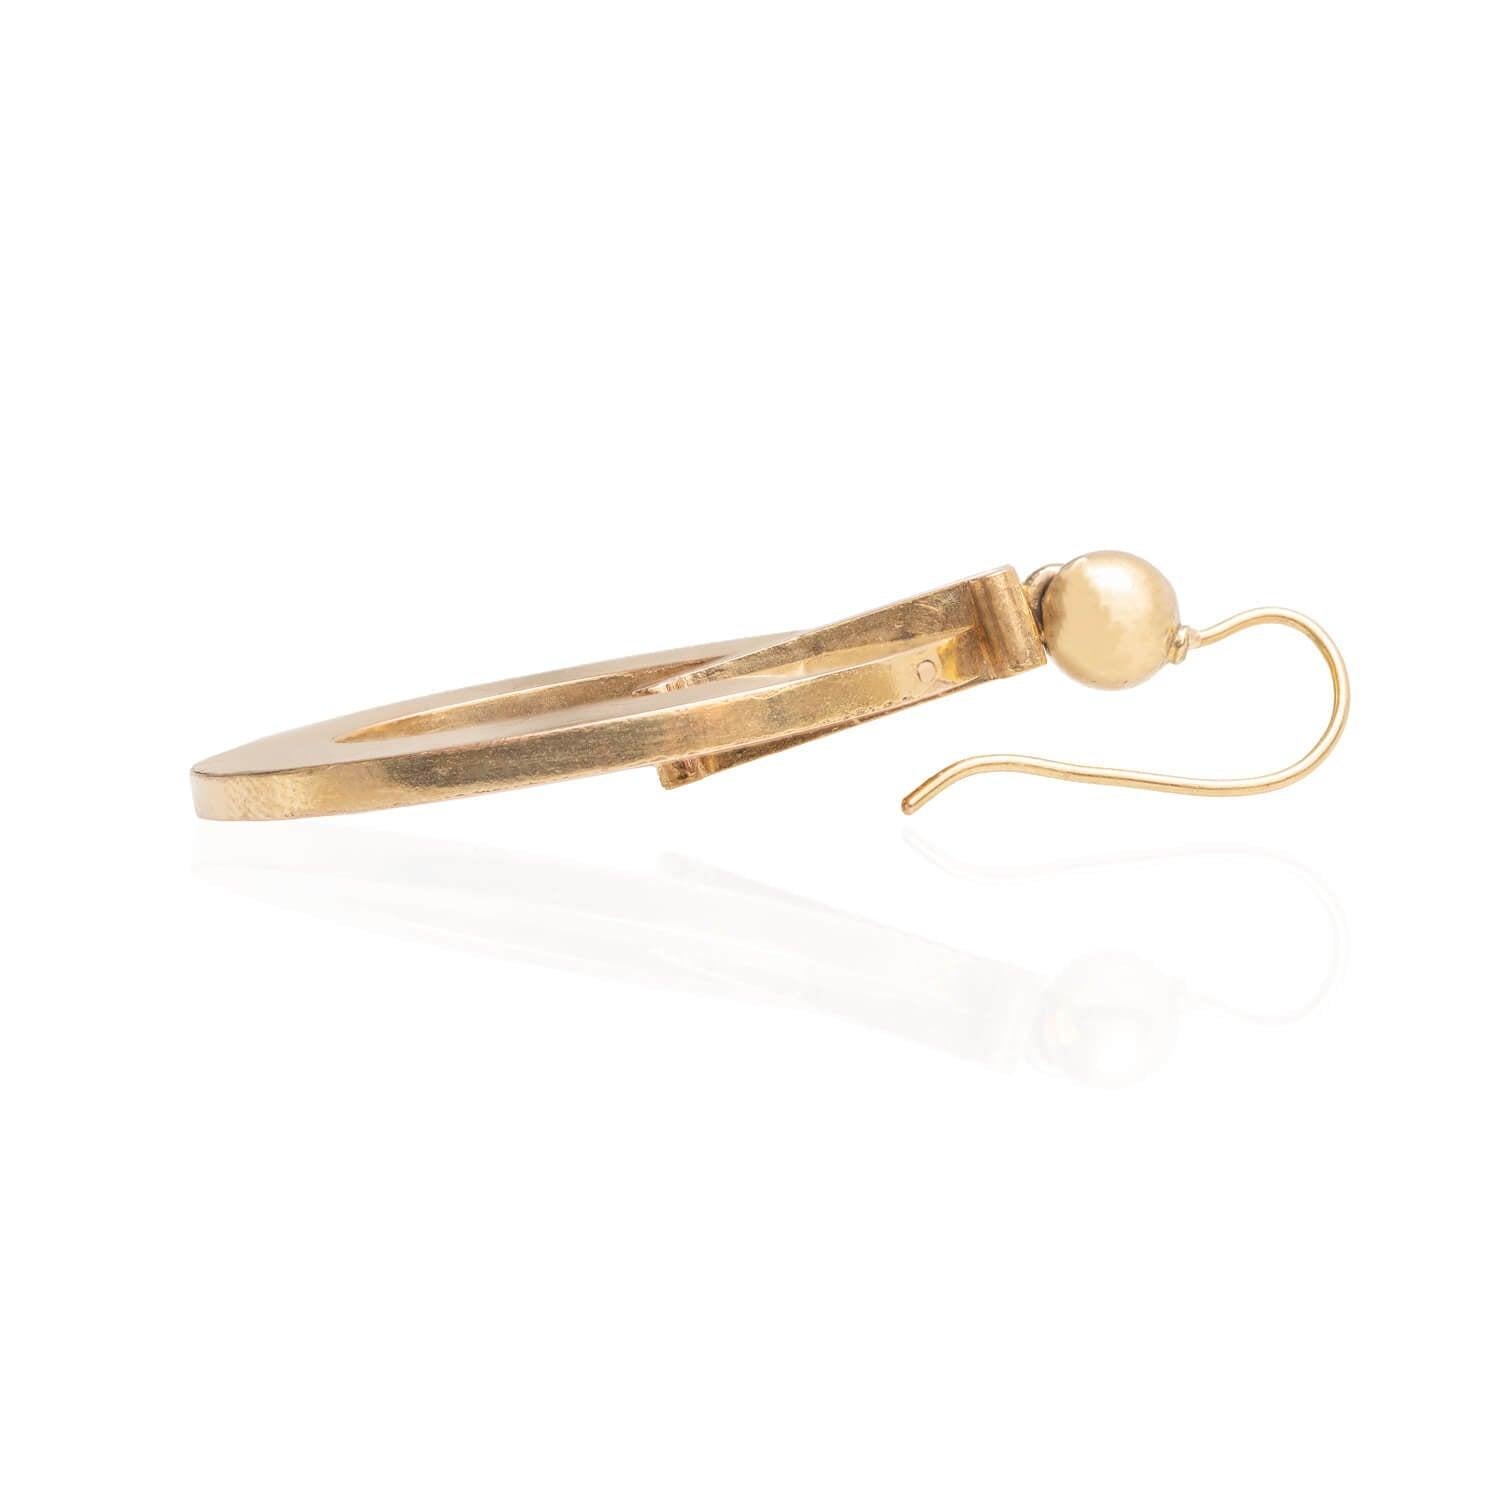 Ein luxuriöses Paar Ohrringe aus der viktorianischen Ära (ca. 1880er Jahre)! Diese aus 15-karätigem Gold gefertigten Ohrringe beginnen mit einem einfachen Ohrringdraht auf einer kugelförmigen Fassung aus Gelbgold. Darunter hängt ein roségoldenes